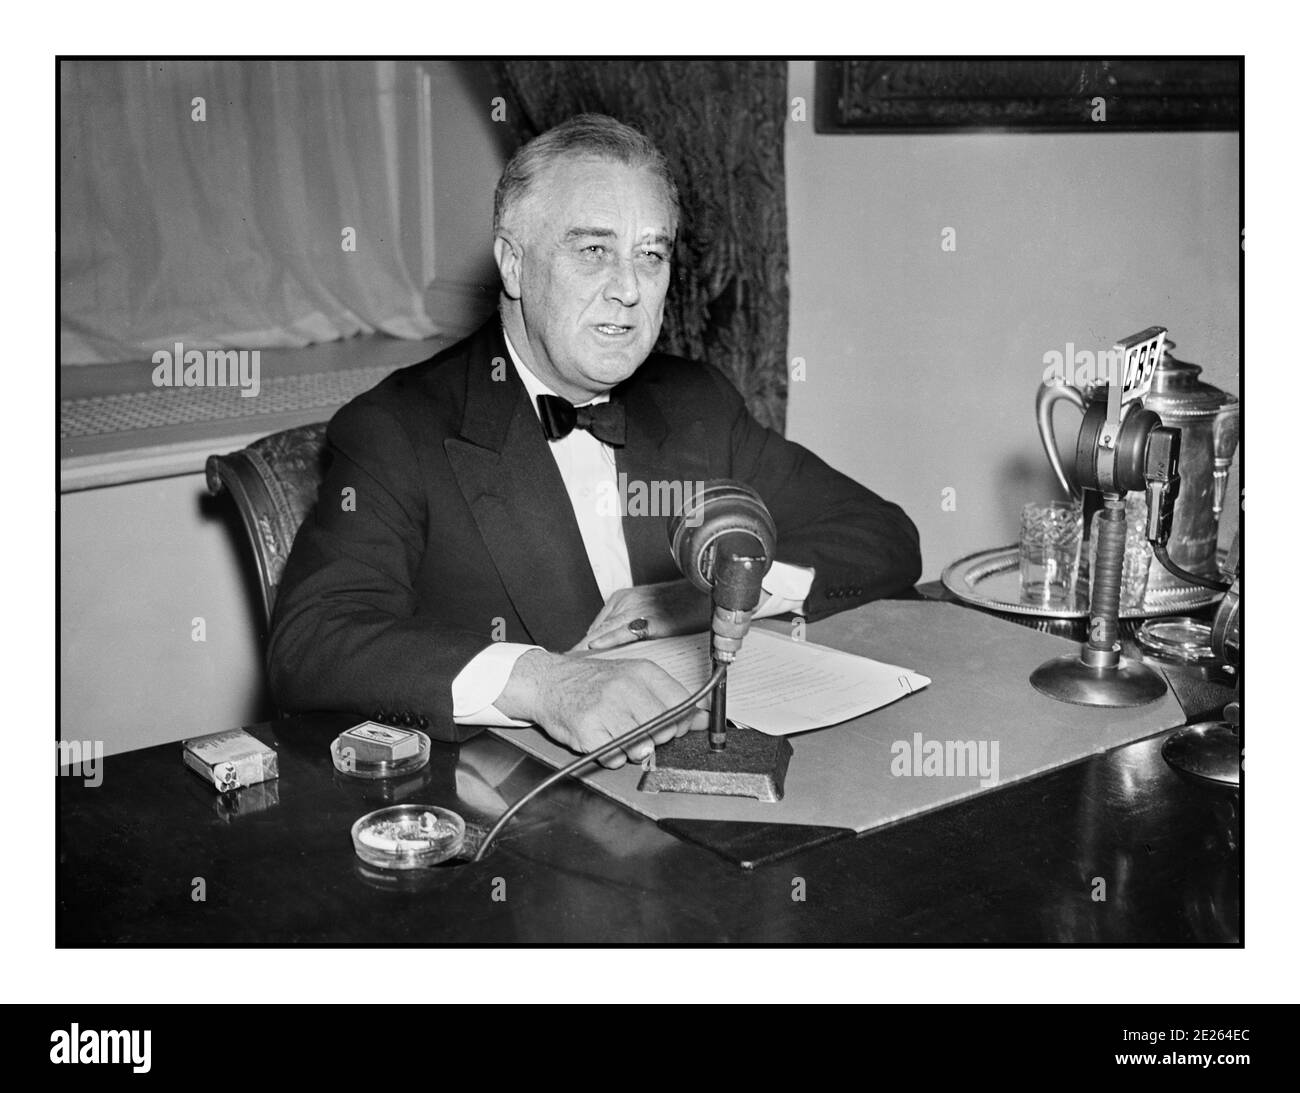 El FDR Franklin D. Roosevelt de los años 30 dio una emisión de radio ("chat de la chimenea") el 1934 de septiembre. En su escritorio CBS y NBC de la red de difusión de micrófonos. Franklin Delano Roosevelt Sr., a menudo referido por sus iniciales FDR, era un estadista y líder político estadounidense que sirvió como el 32º Presidente de los Estados Unidos desde 1933 hasta su muerte en 1945. Foto de stock